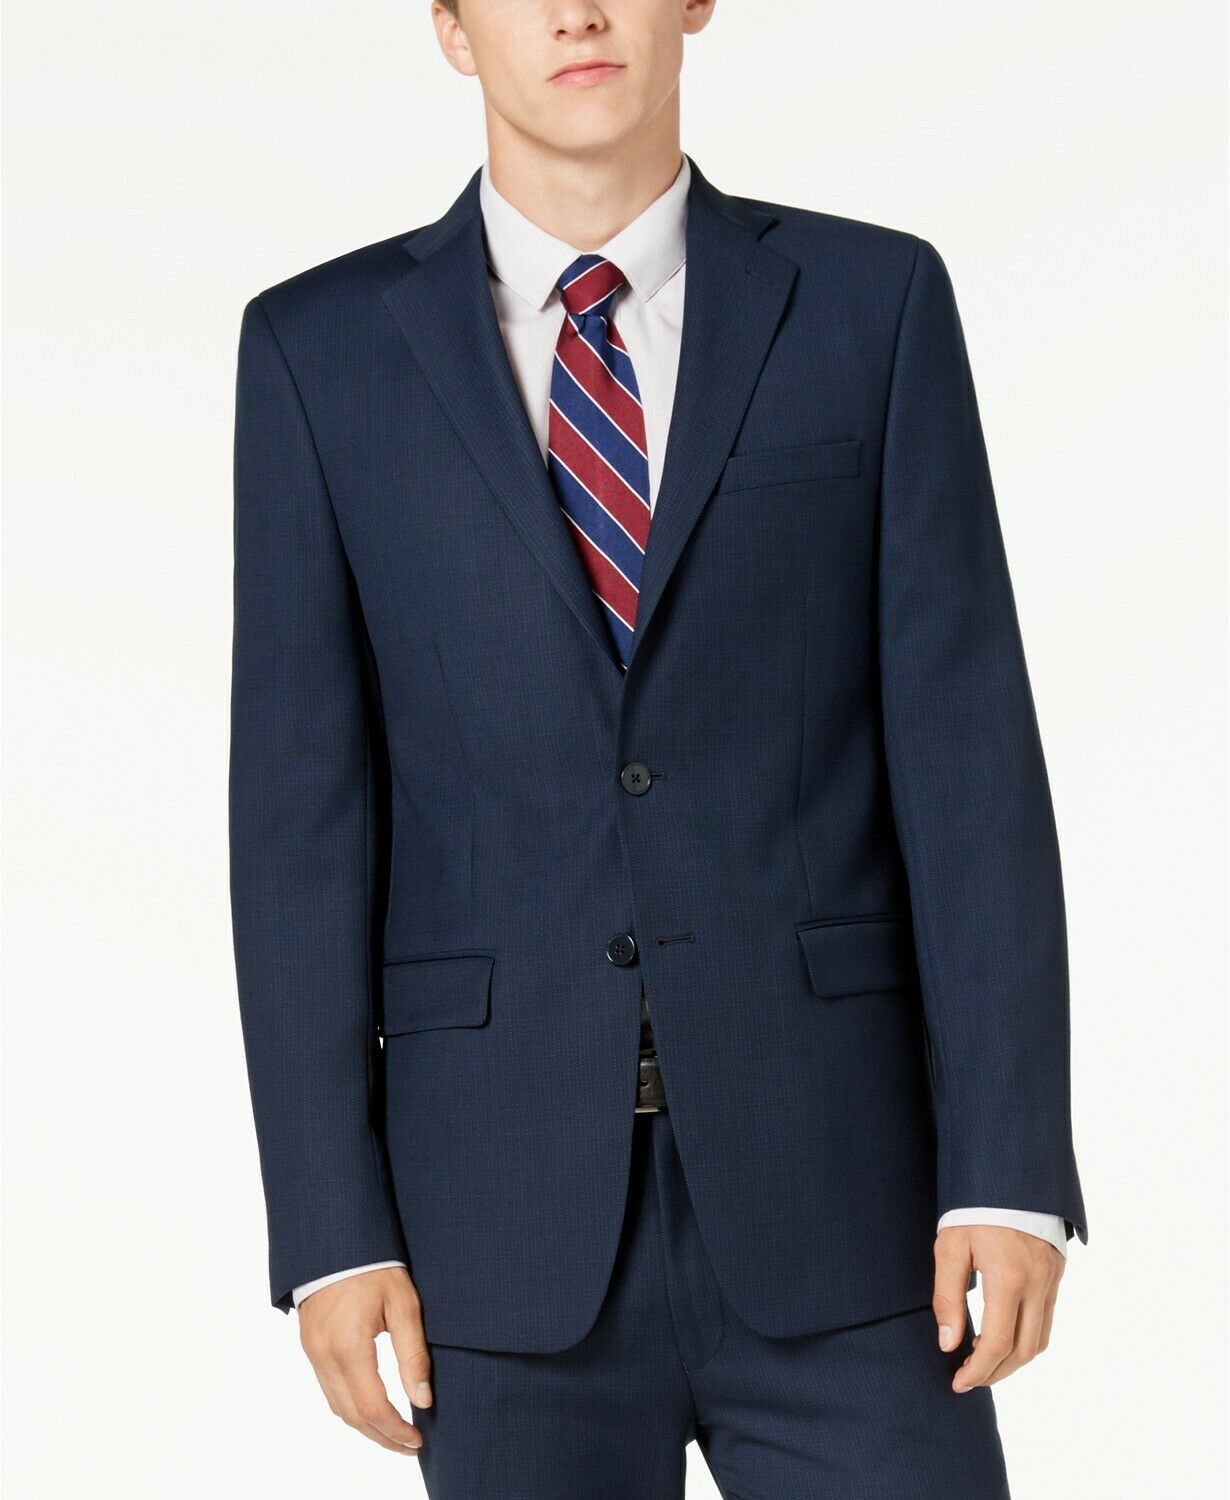 Calvin Klein Mens Suit 38L / 30 x 32 Slim-Fit Stretch Blue Charcoal Birdseye